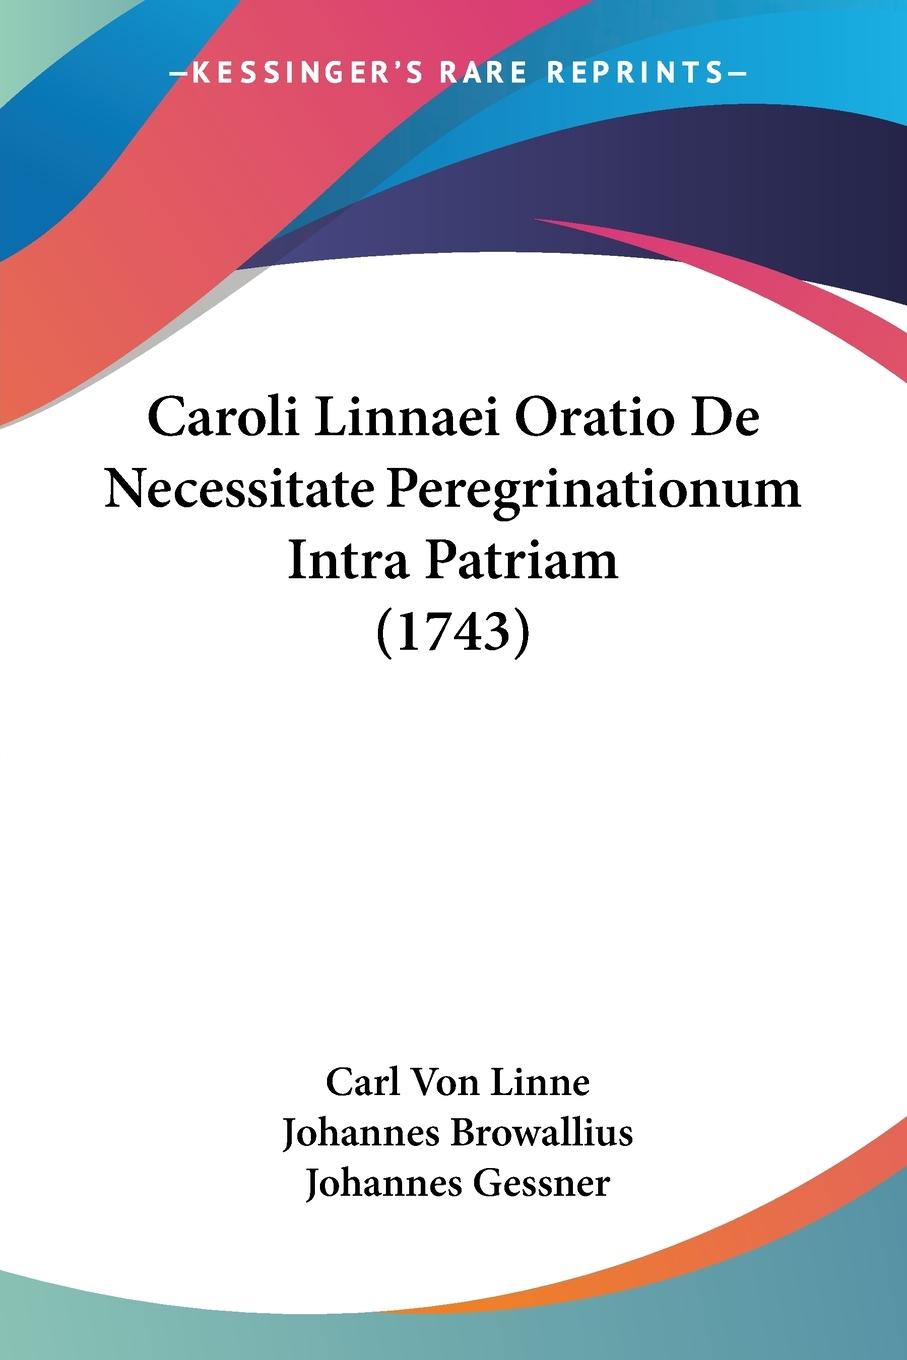 Caroli Linnaei Oratio De Necessitate Peregrinationum Intra Patriam (1743) - Linne, Carl Von Browallius, Johannes Gessner, Johannes